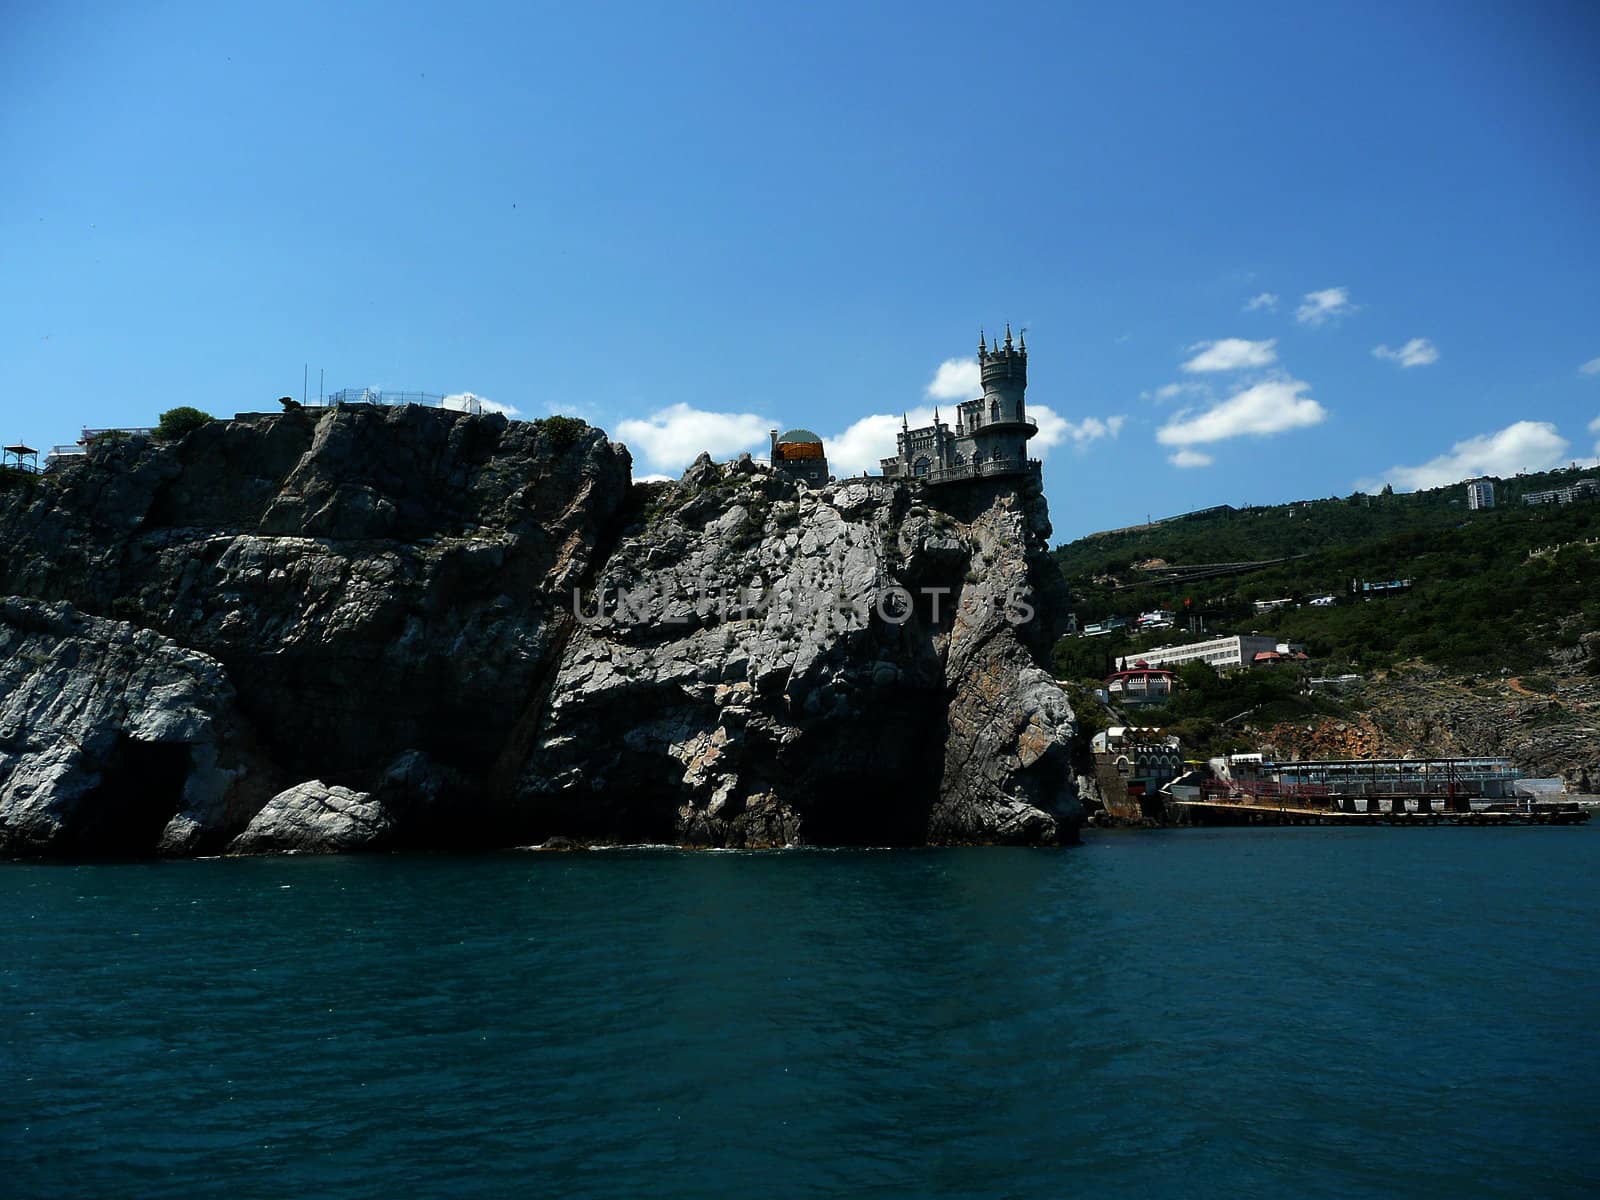 Swallow's Nest, Scenic Castle over the Black Sea, Yalta, Crimea, by marcorubino